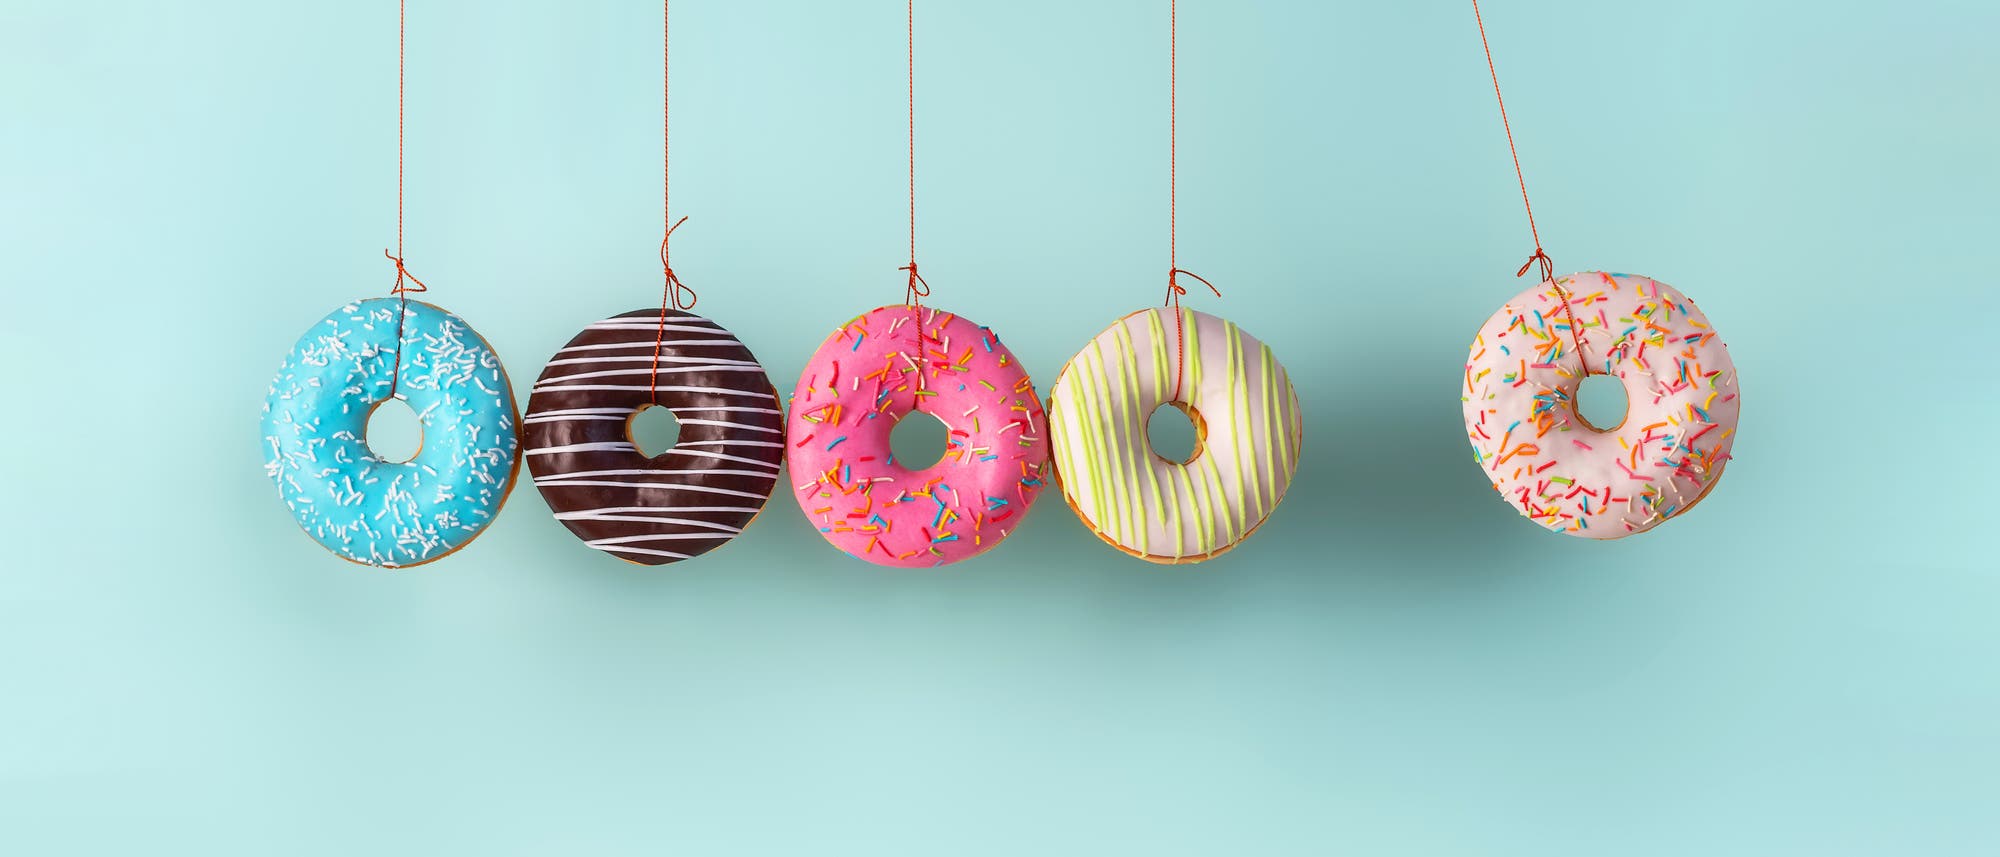 Perpetuum mobile aus Donuts